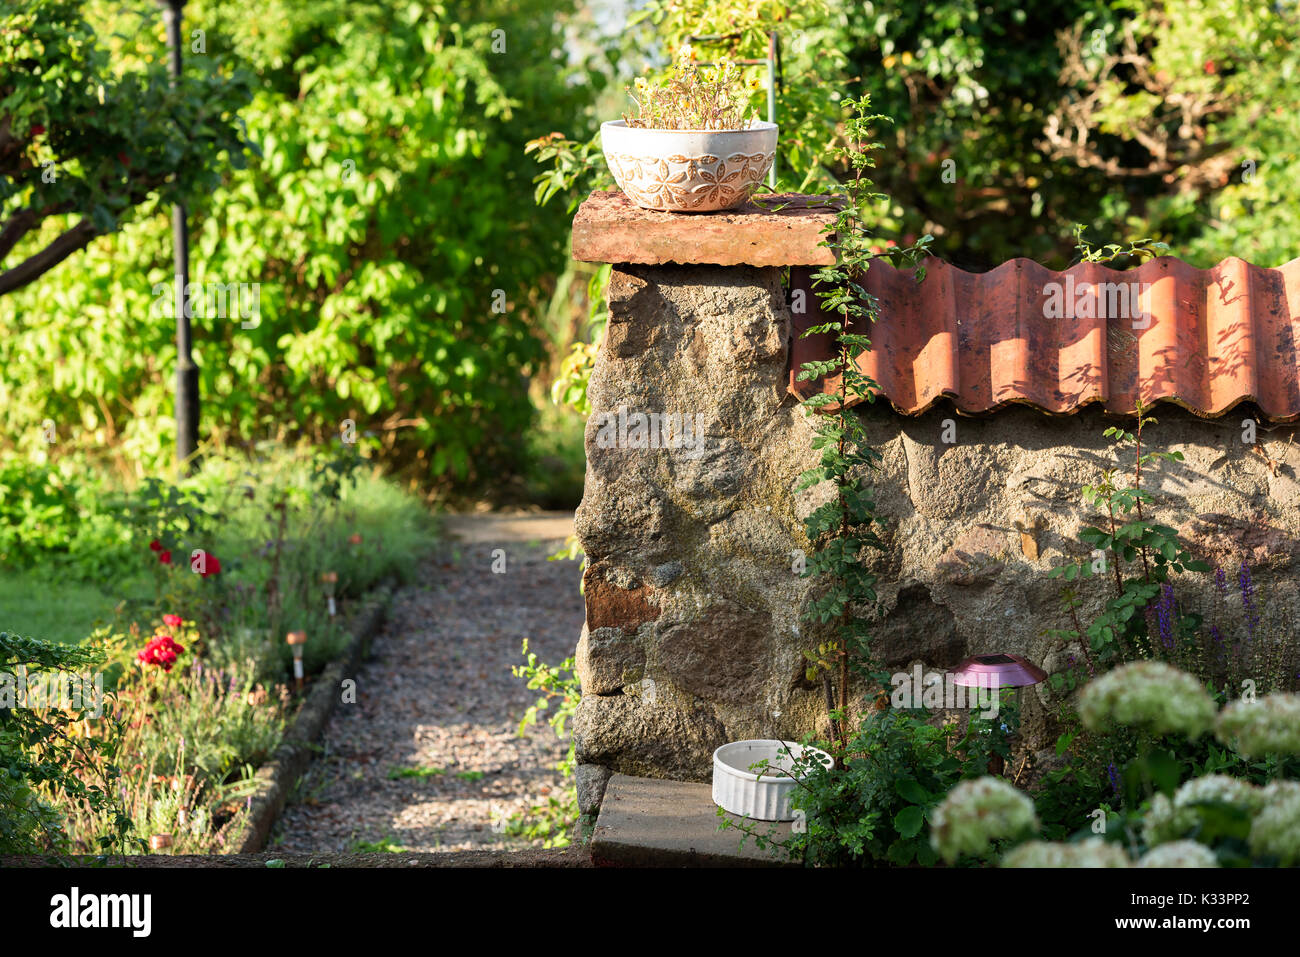 Angolo del muro di pietra con vaso di fiori sulla parte superiore e un giardino di ghiaia percorso accanto a. Parete ha tegole del tetto sulla parte superiore. Foto Stock